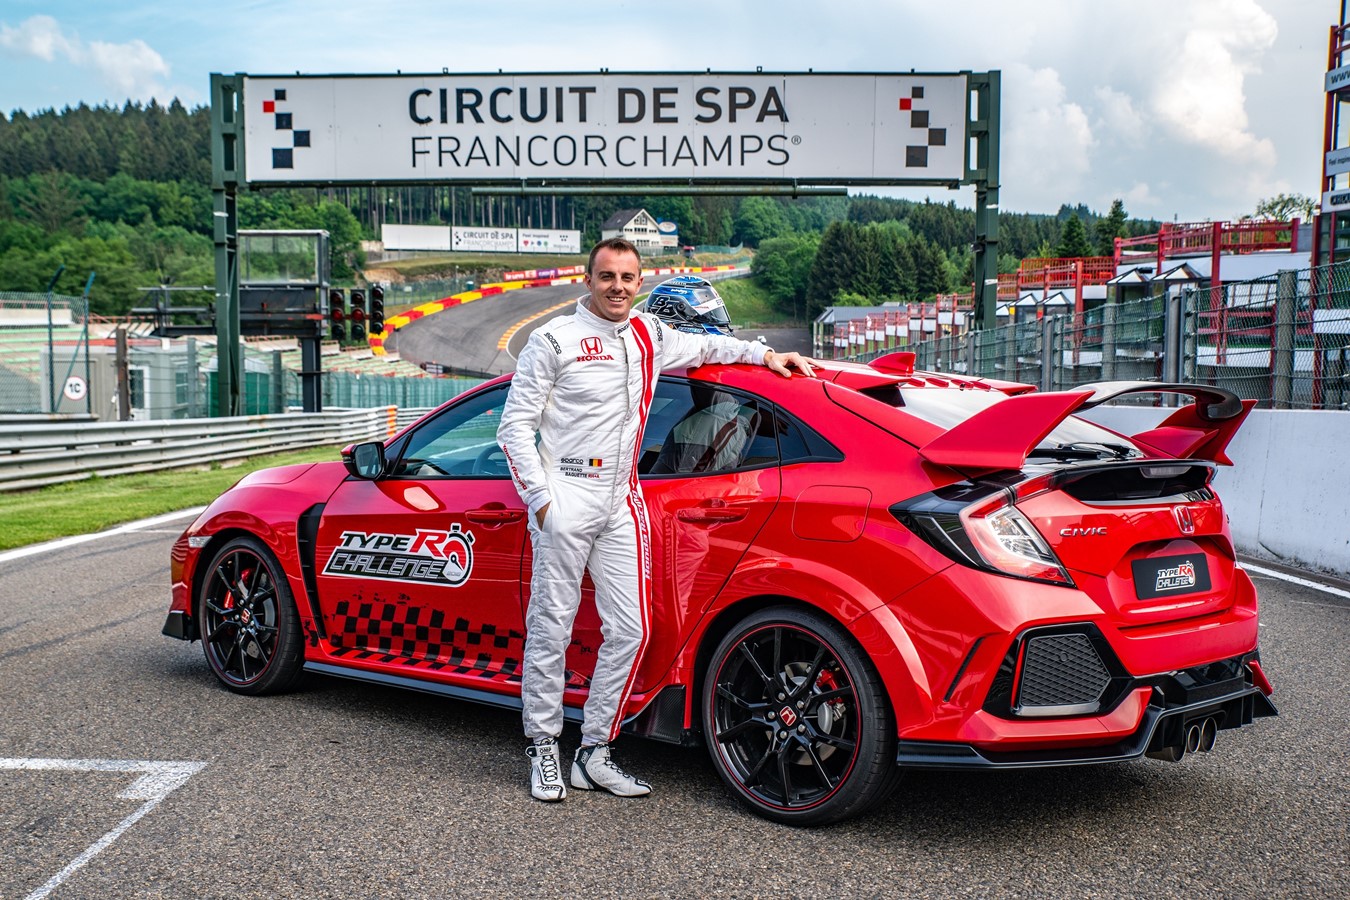  Le « Type R Challenge 2018 » face à Eau Rouge : La star du Super GT japonais Bertrand Baguette brise le record du tour à Spa-Francorchamps